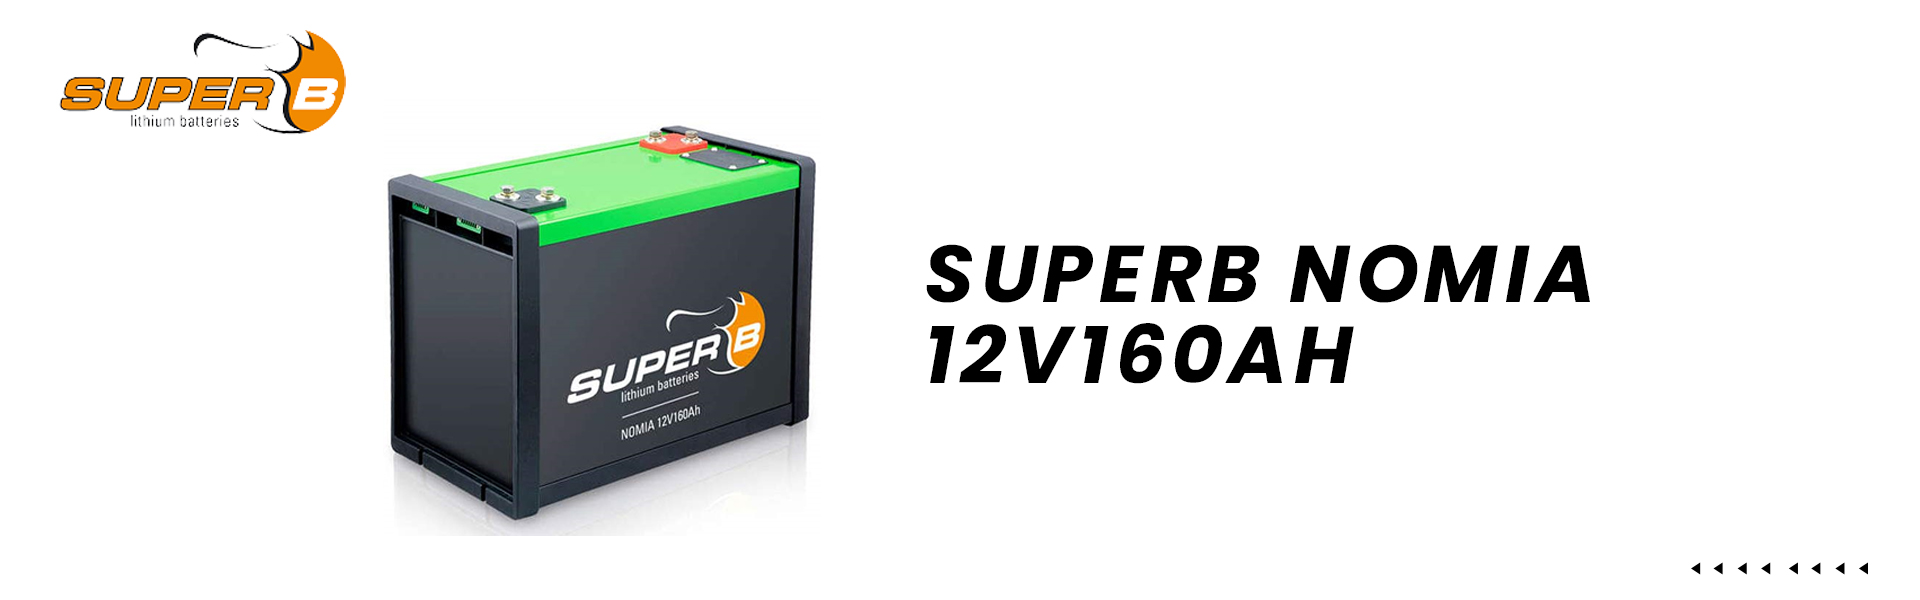 SuperB-Nomia-12V160AH